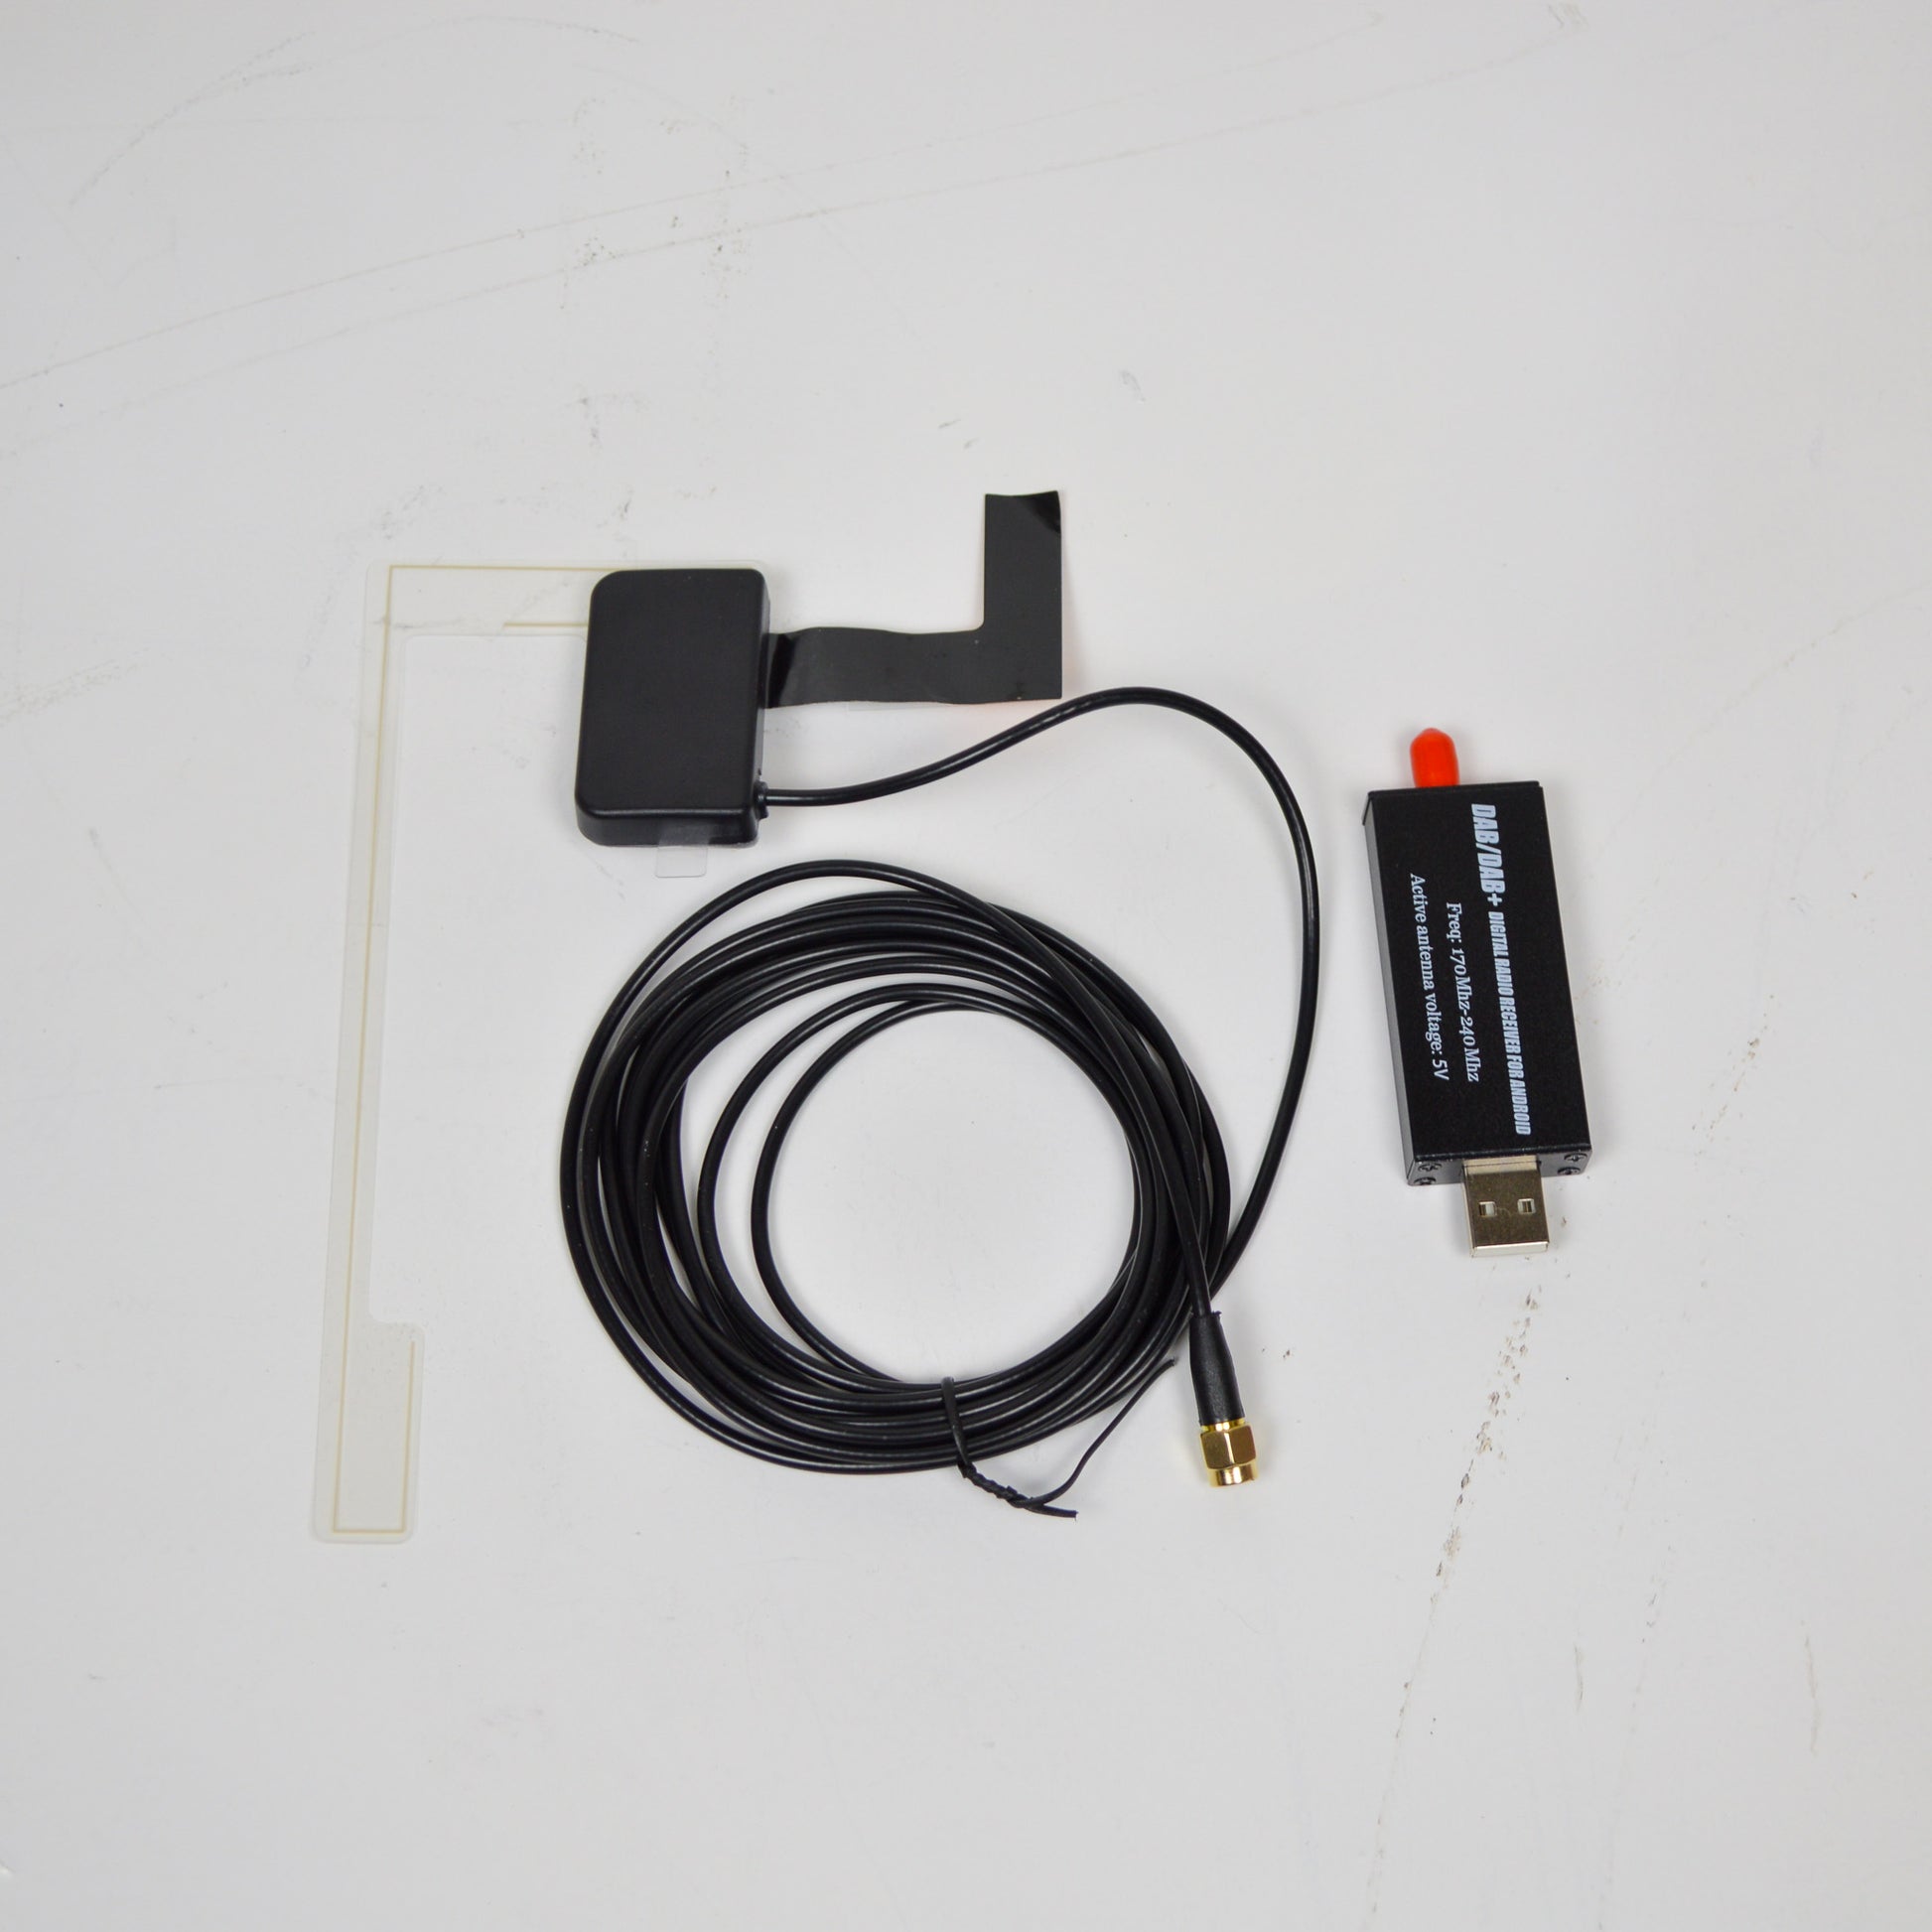 Universal USB DAB+ Tuner/Antenne Digital Radio Empfänger für Android